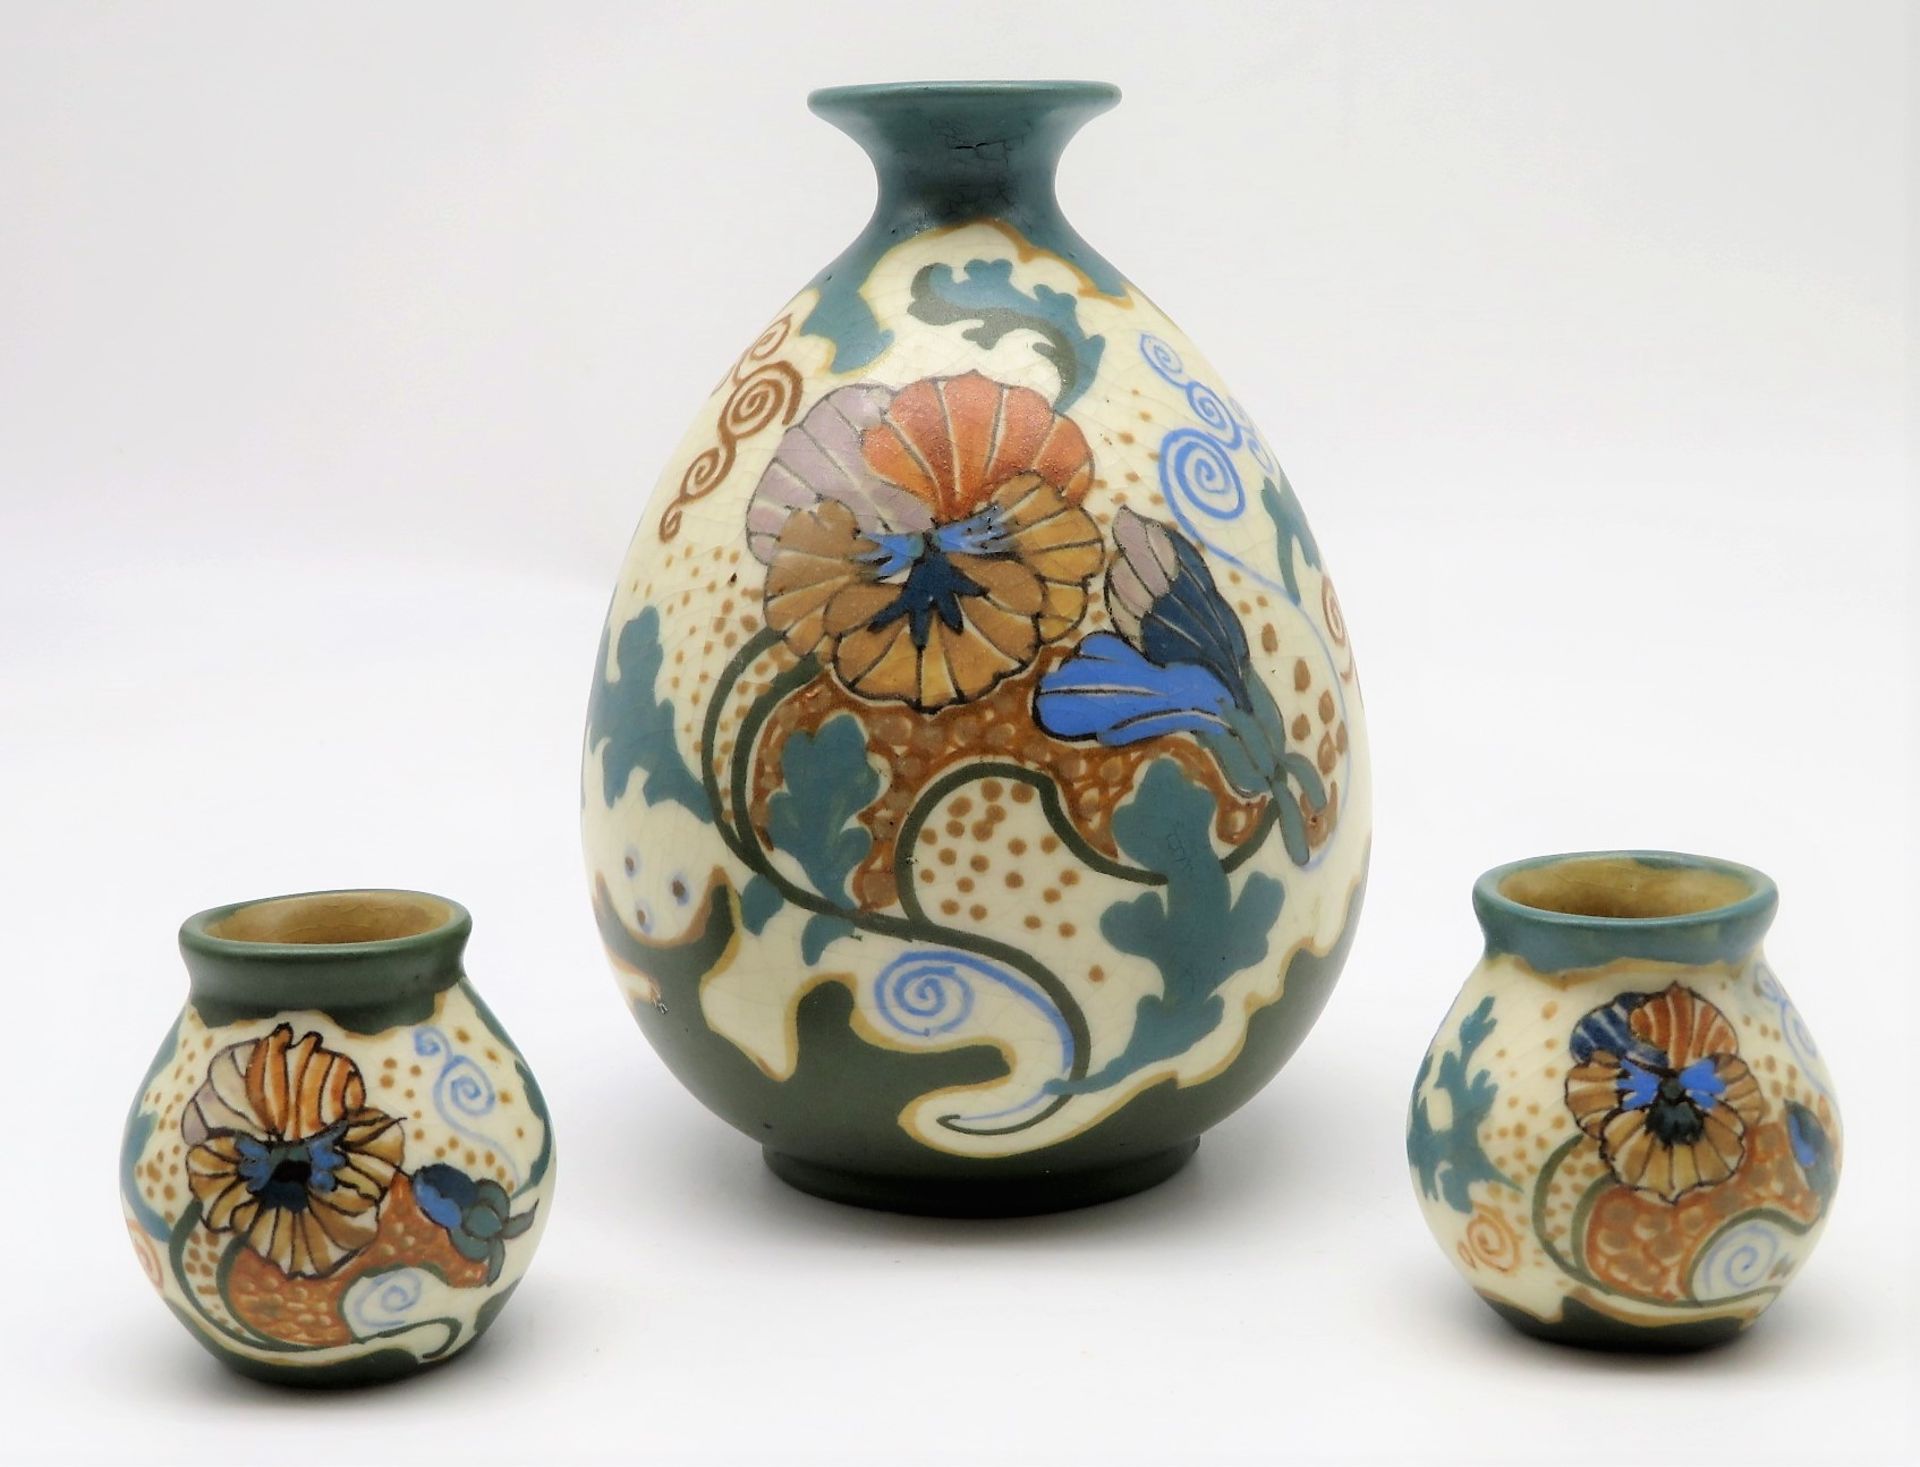 3 Vasen, Jugendstil, Niederlande, Arnhem, um 1900, Fayence mit vegetabiler, polychromer Bemalung, s